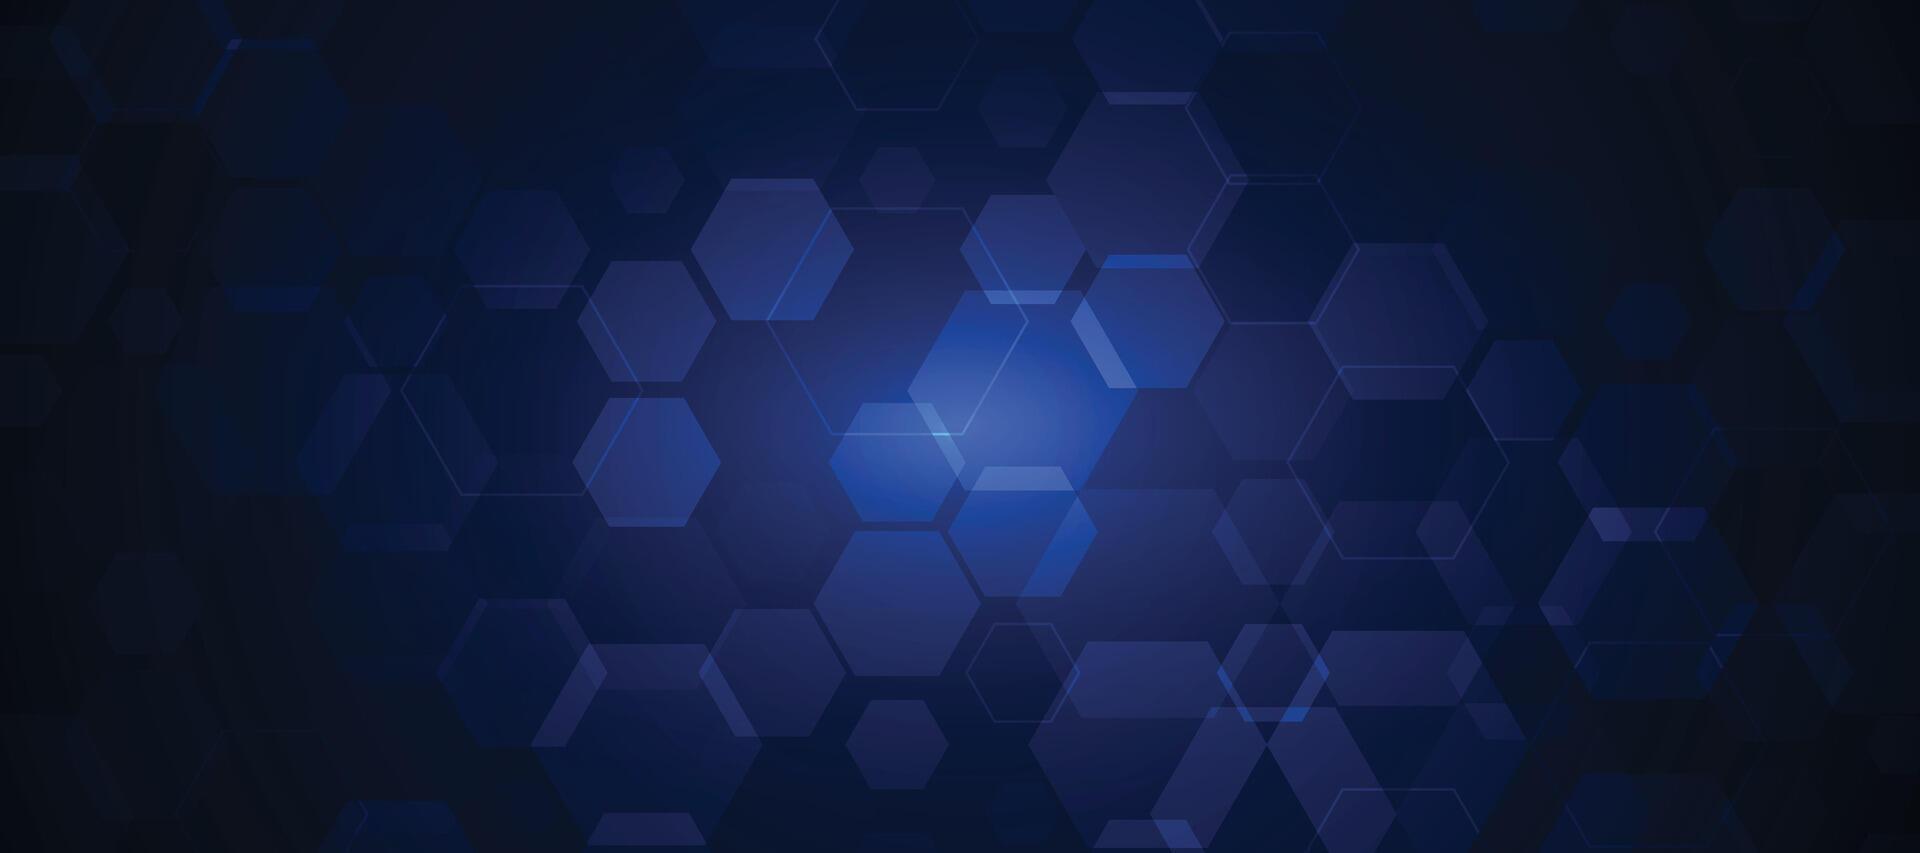 abstrakt blå hexagonal bakgrund för trogen digital hi-tech kommunikation innovation design. vektor